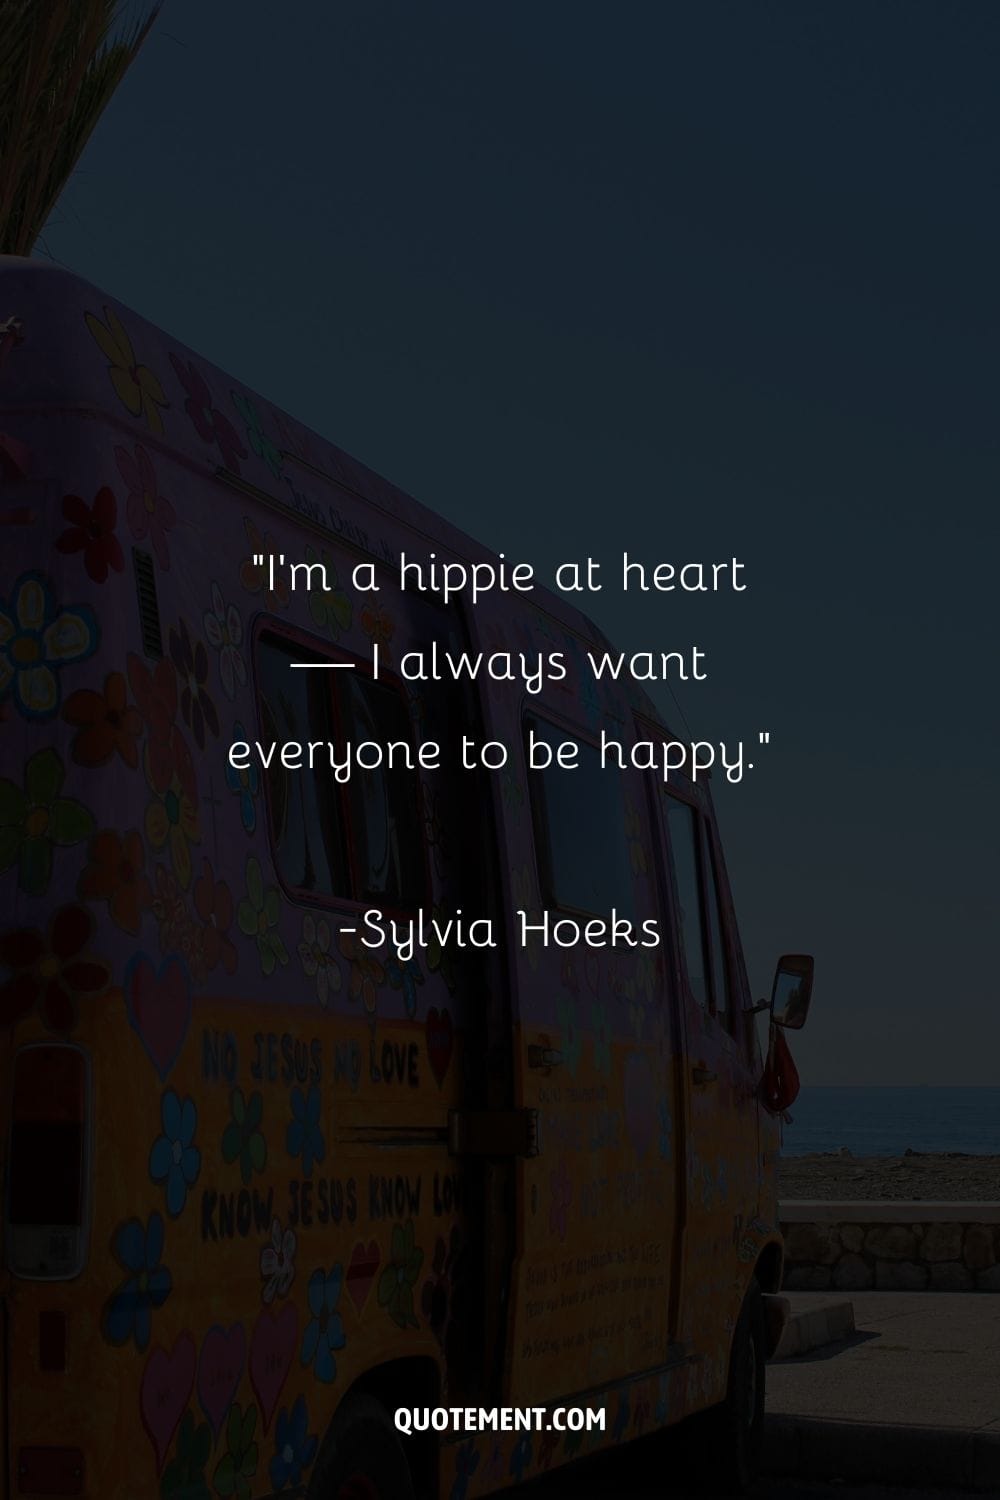 autobús hippie adornado con colores en una playa